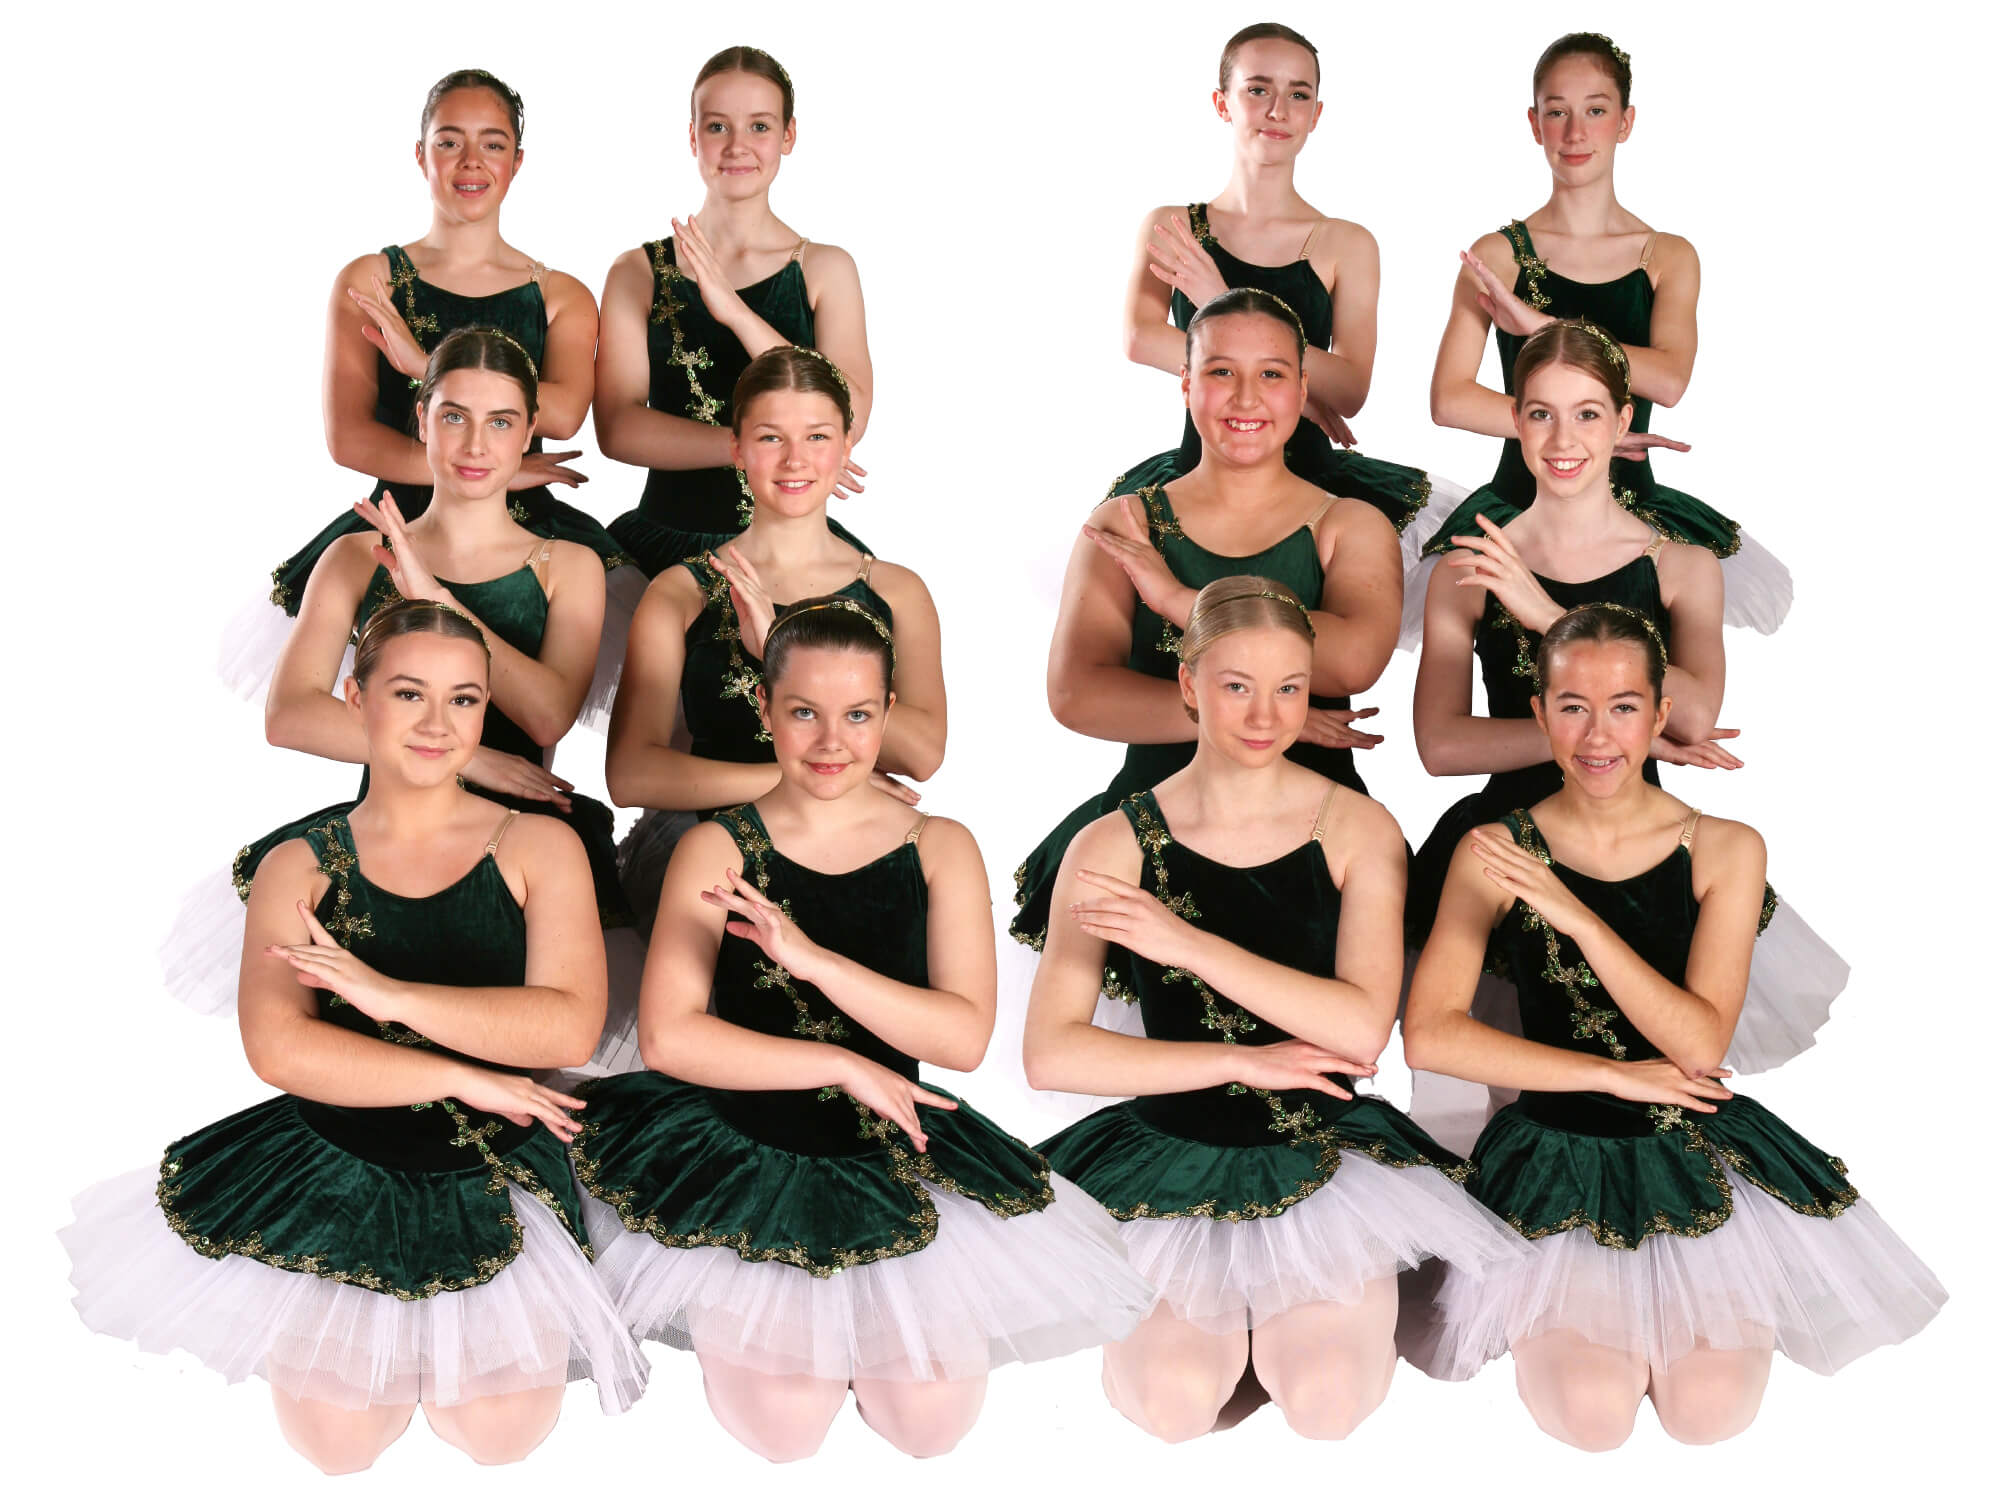 Joanna Mardon School of Dance Ballet classes in Exeter